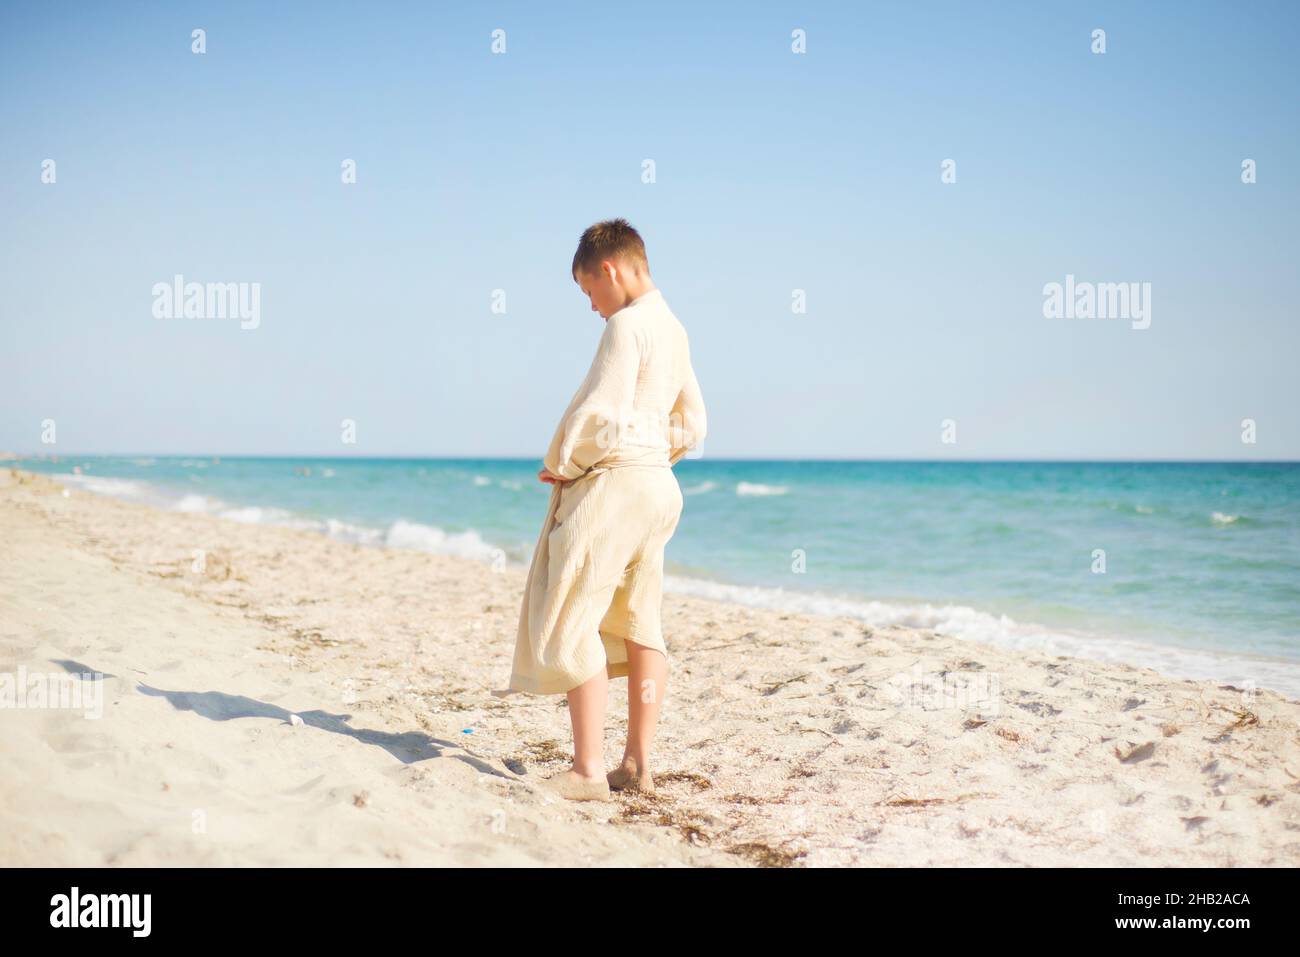 Ein barfuß-Junge in Musselin-Robe steht mit dem Rücken an der Küste. Türkisfarbenes Meer. Sand. Stockfoto